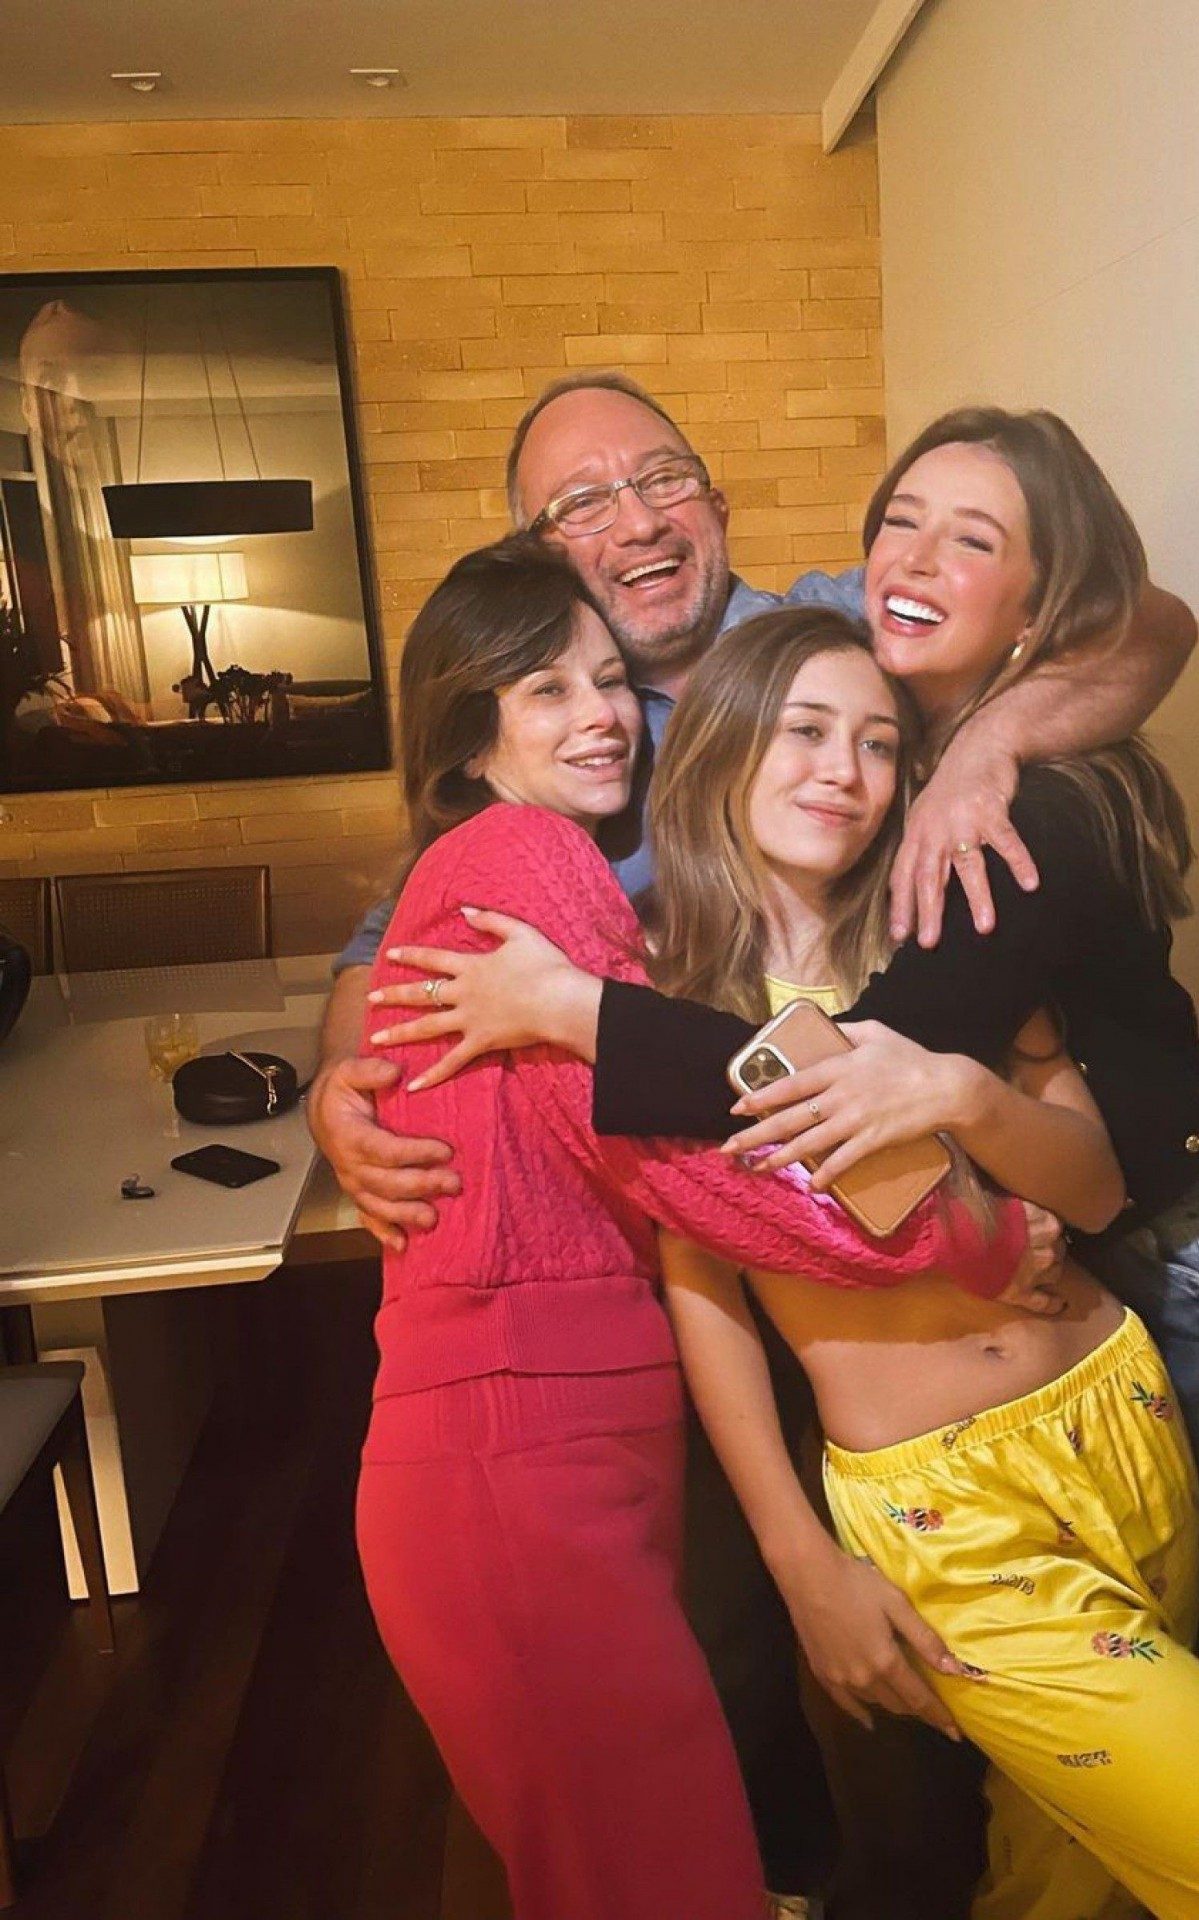 Duda Reis posa com a família no aniversário do pai, Luiz Fernando Barreiros - Reprodução de internet